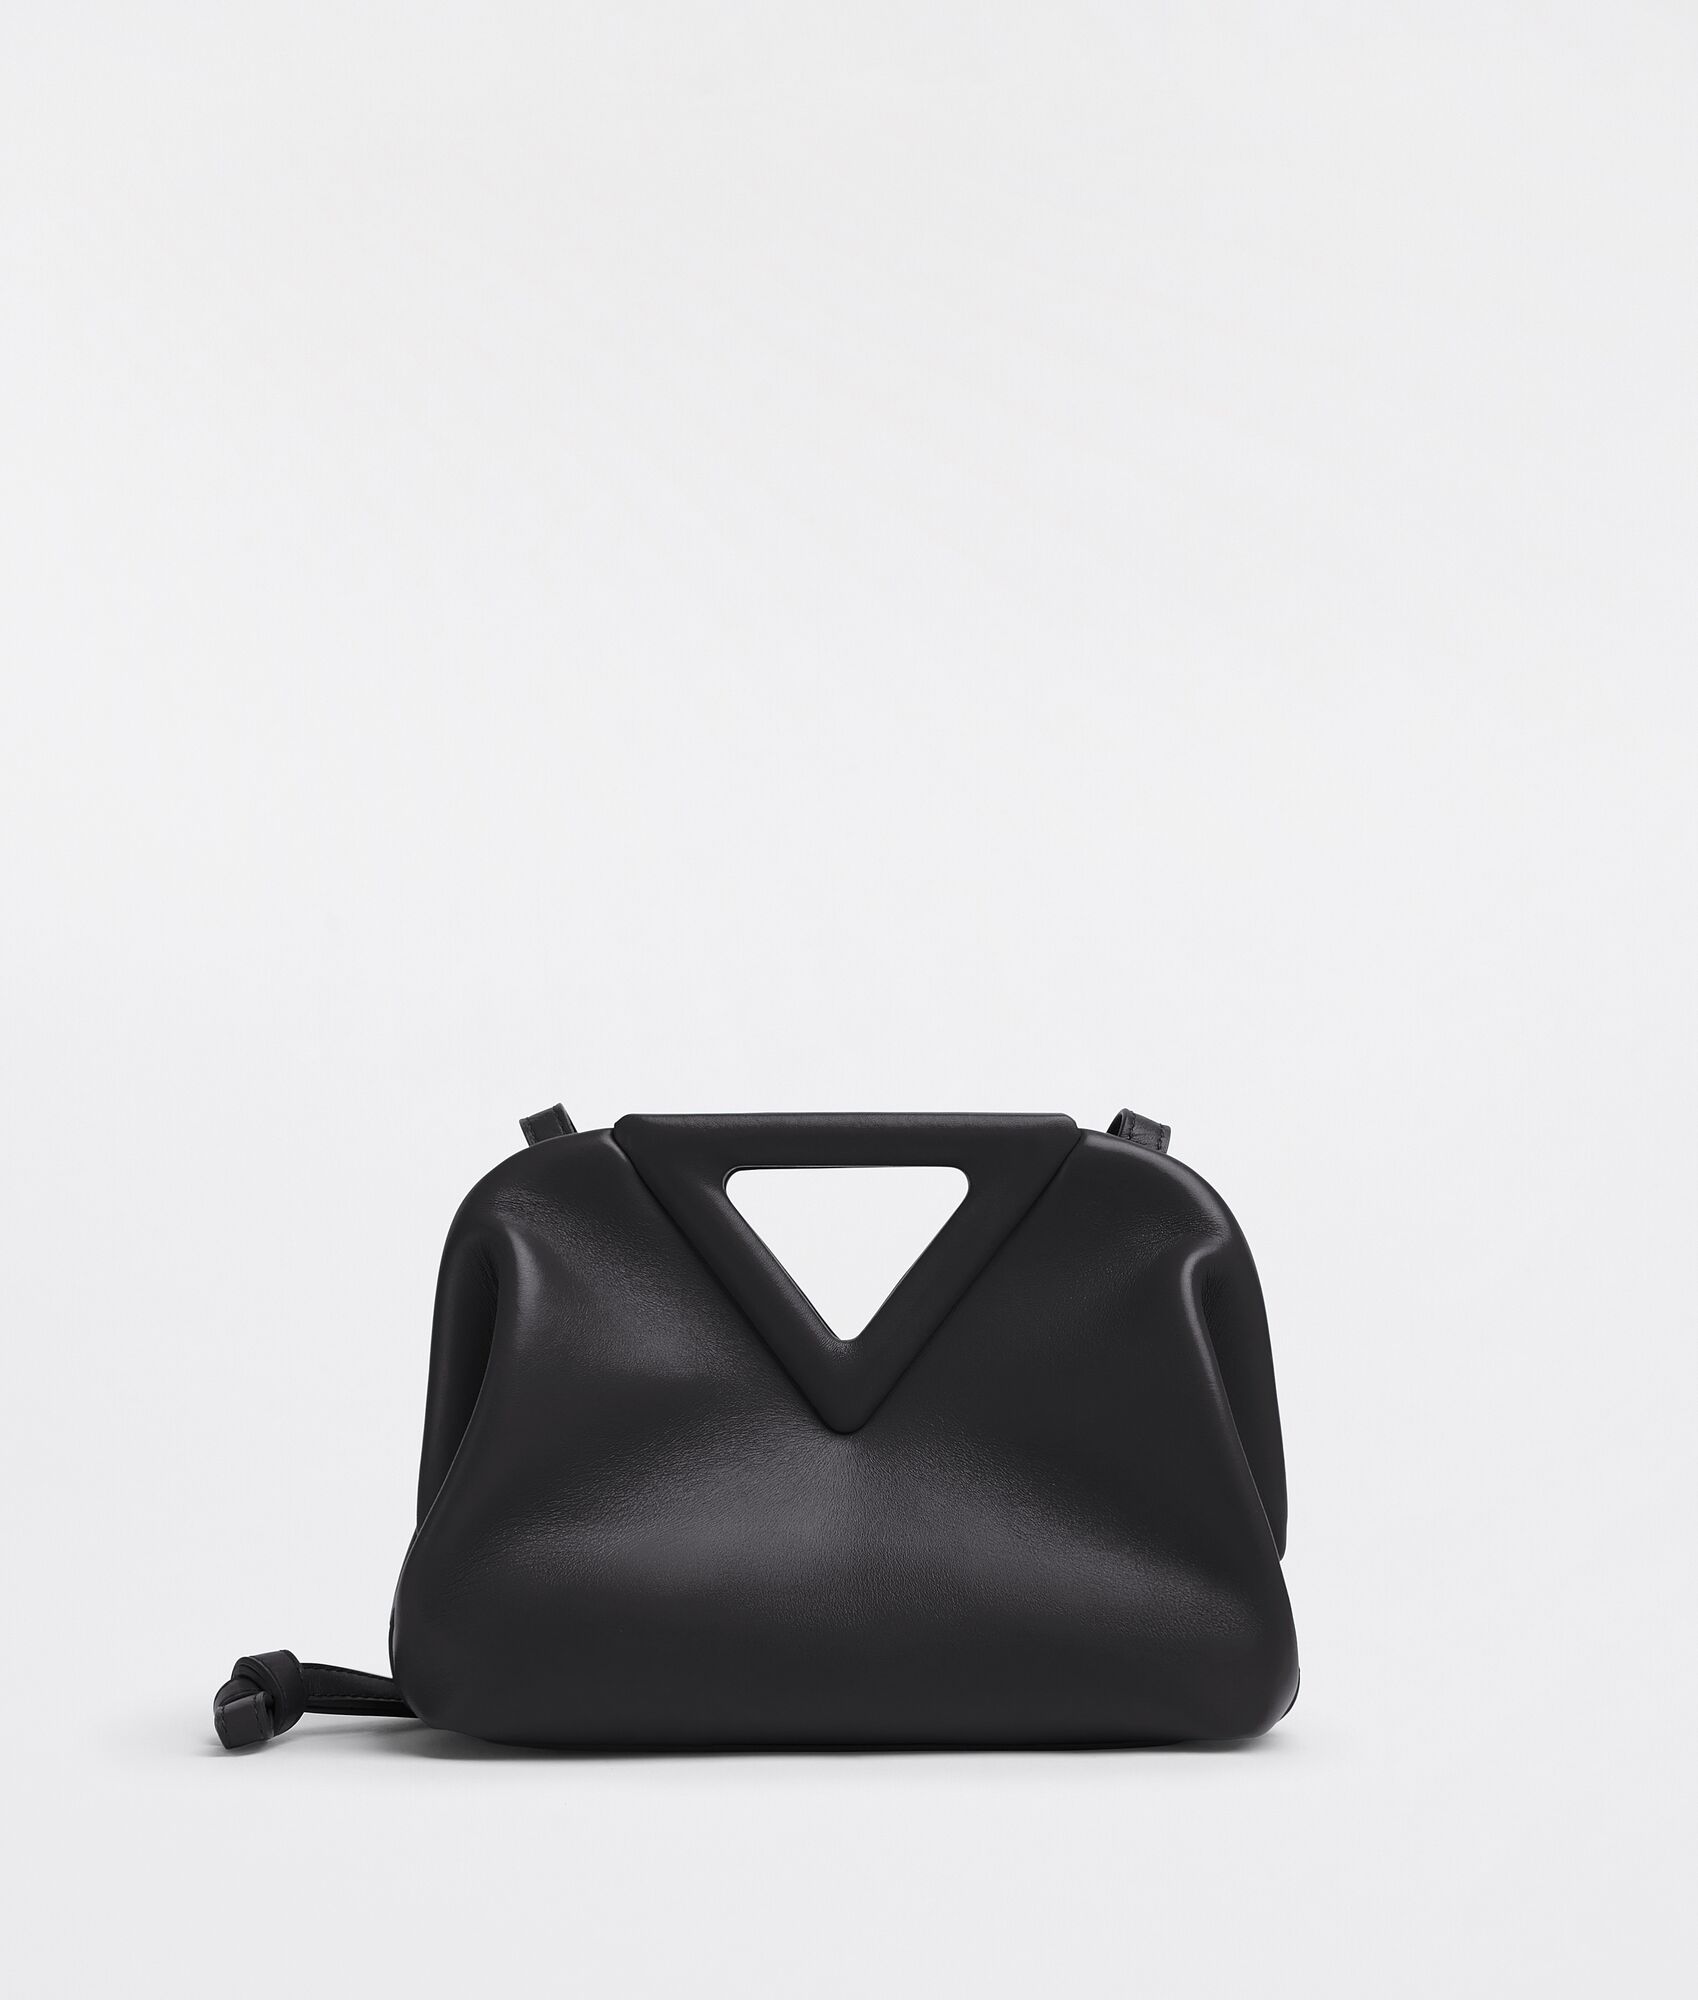 Bottega Veneta® Women's Mini Jodie in Black. Shop online now.